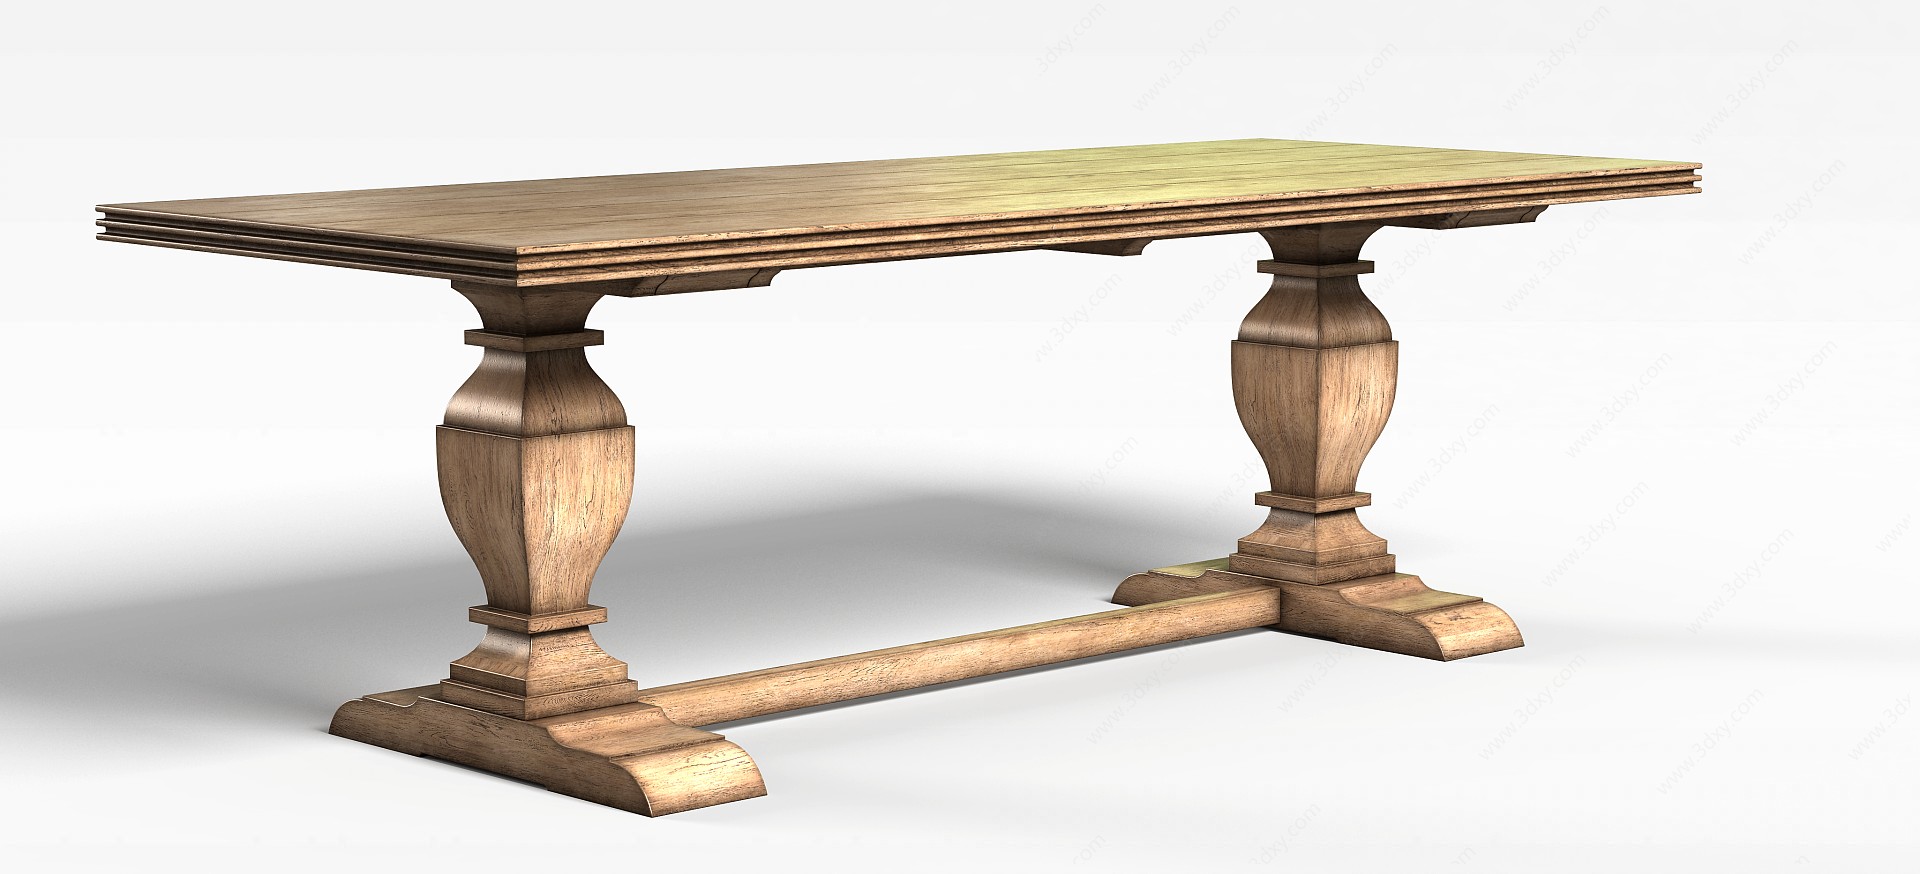 中式复古桌子3D模型